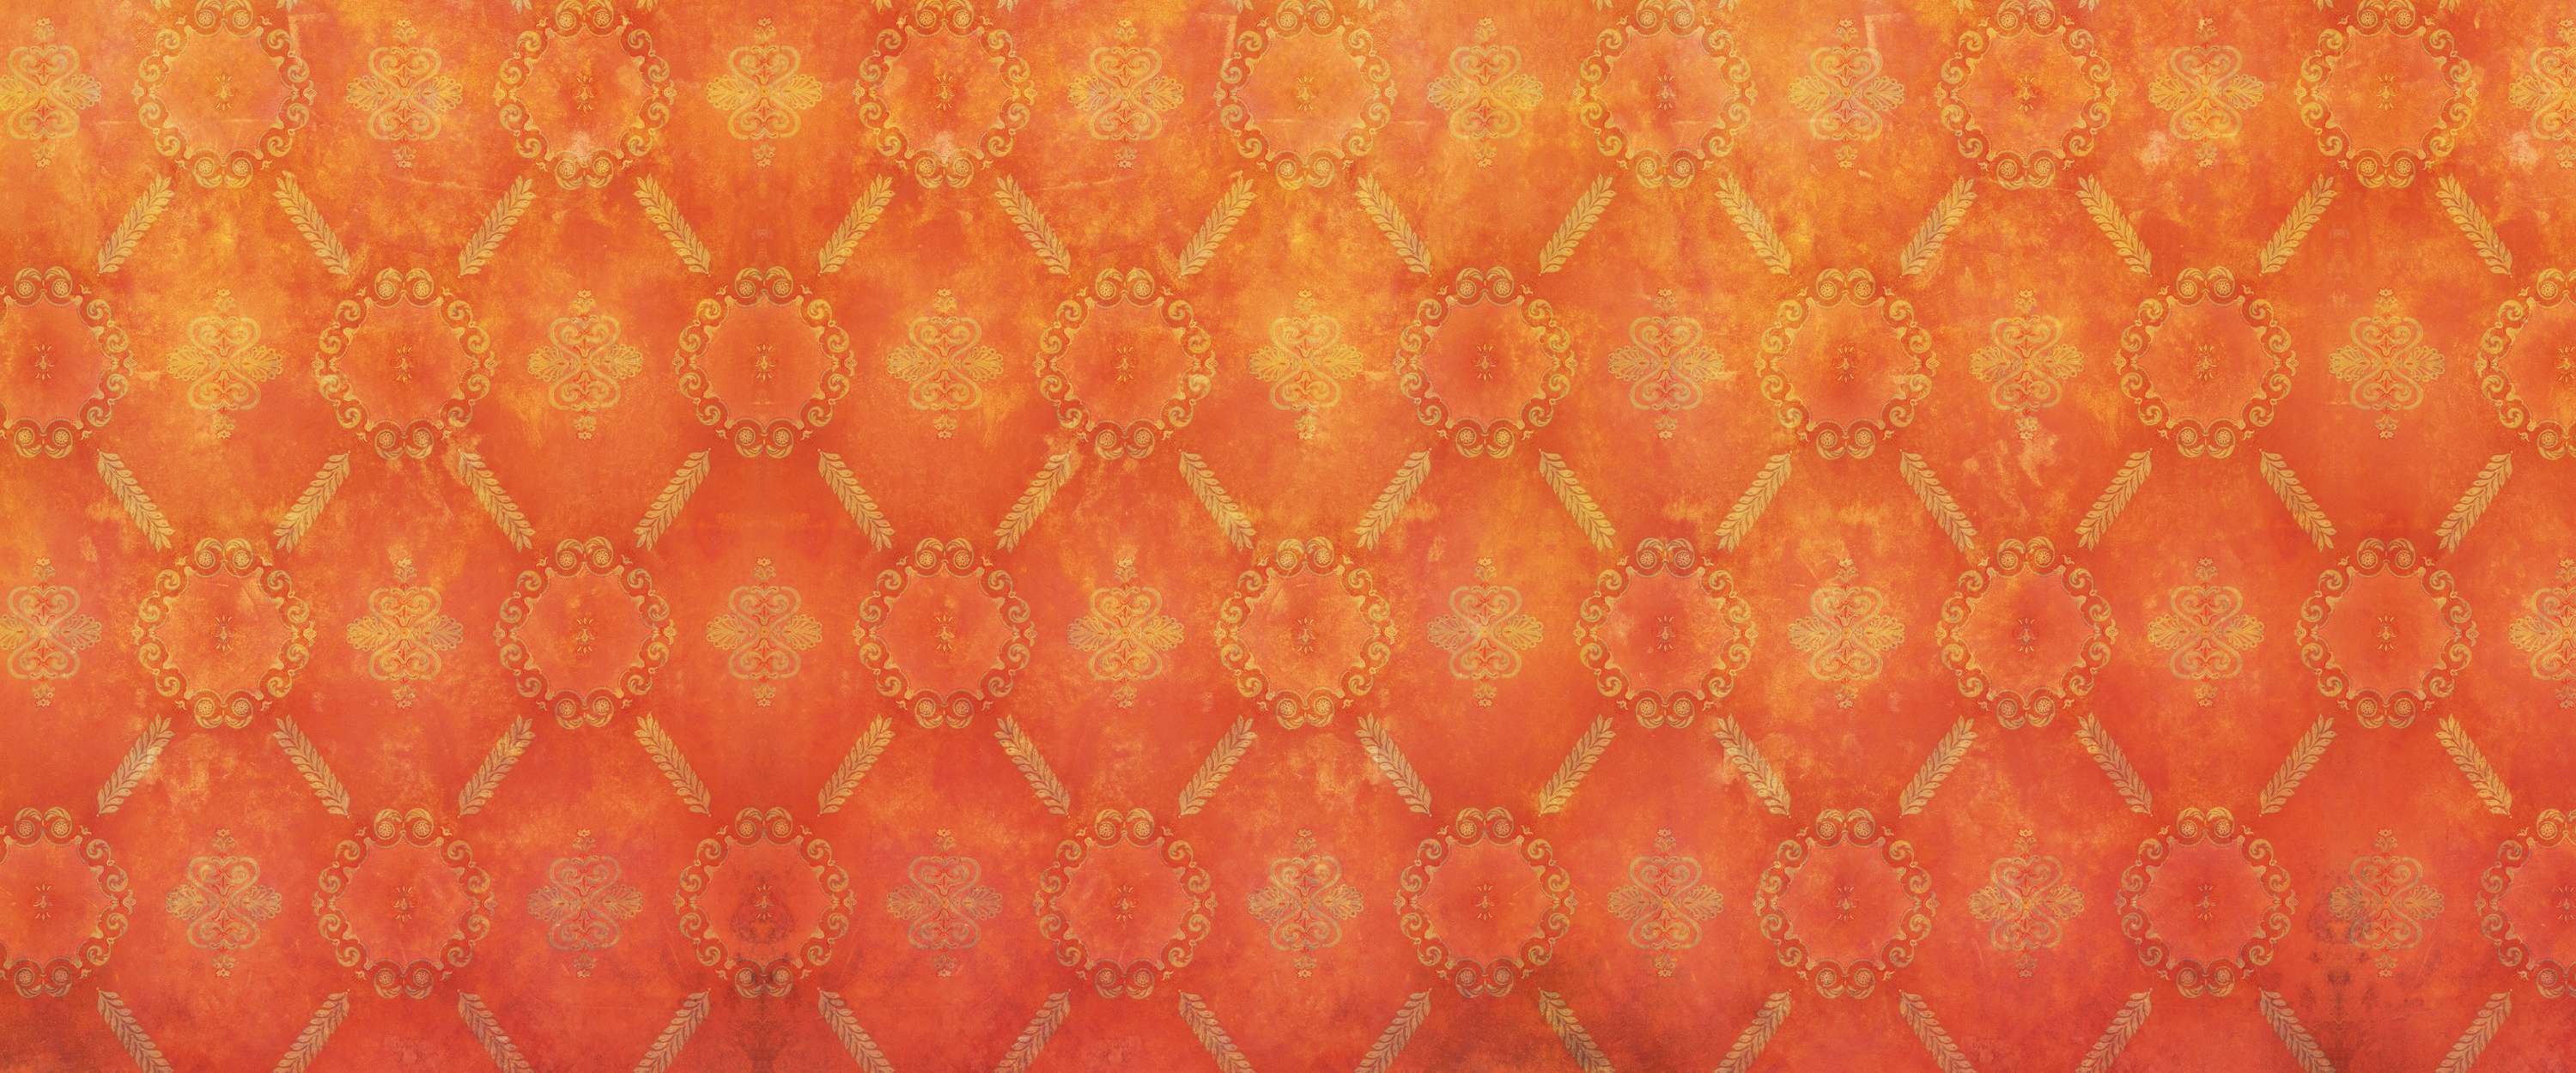             Oranje Behang met Ornamentpatroon & Gebruikte Look
        